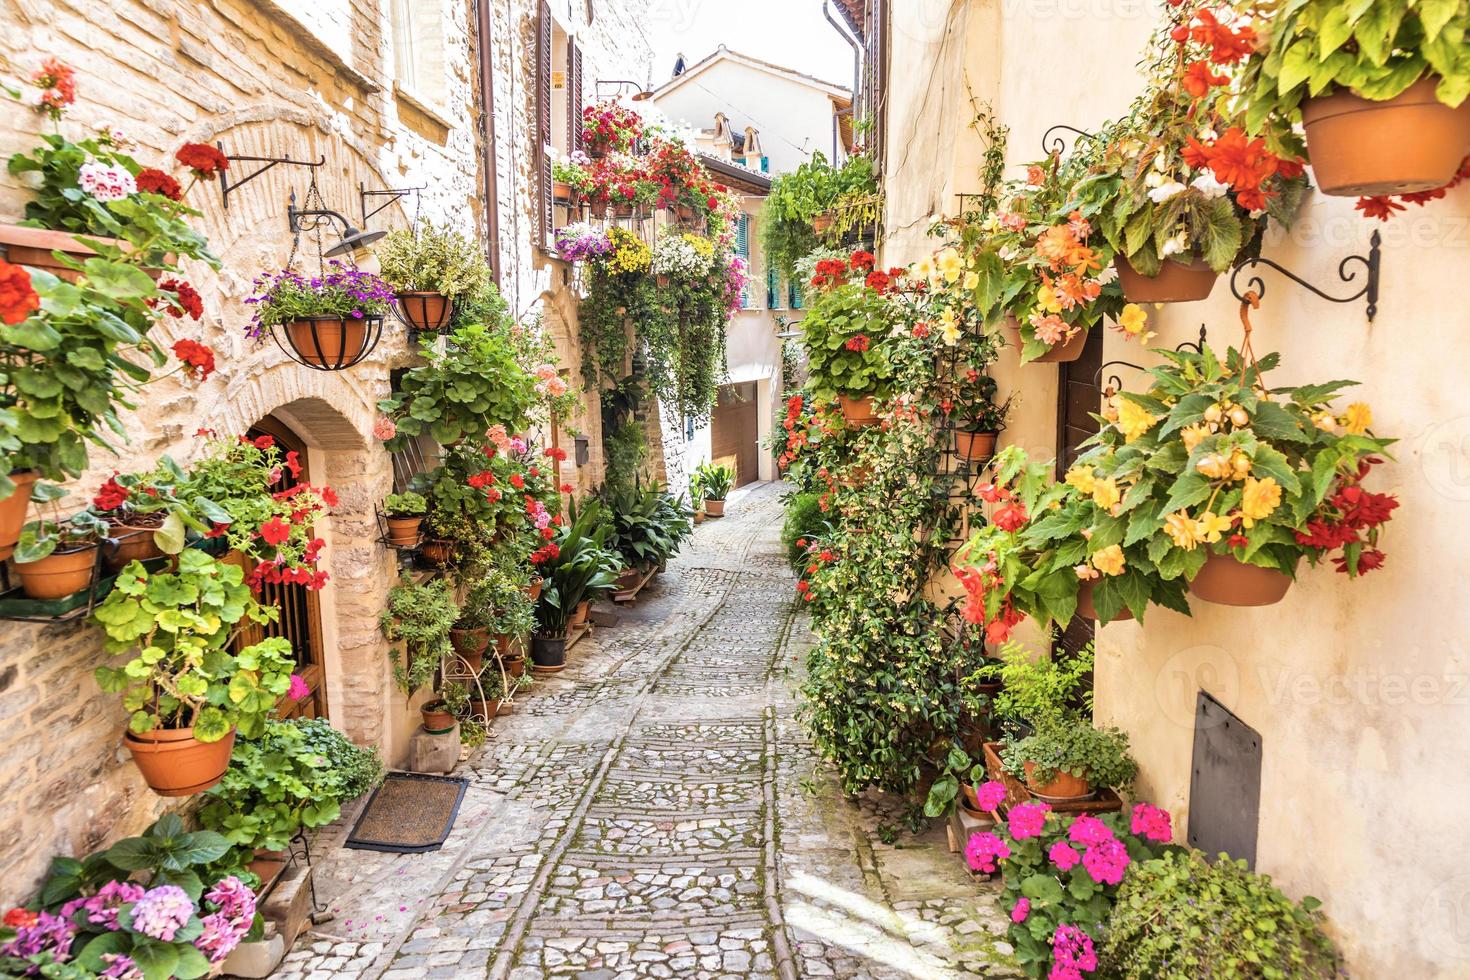 flores na antiga rua localizada na aldeia de spello. região de umbria, itália. foto